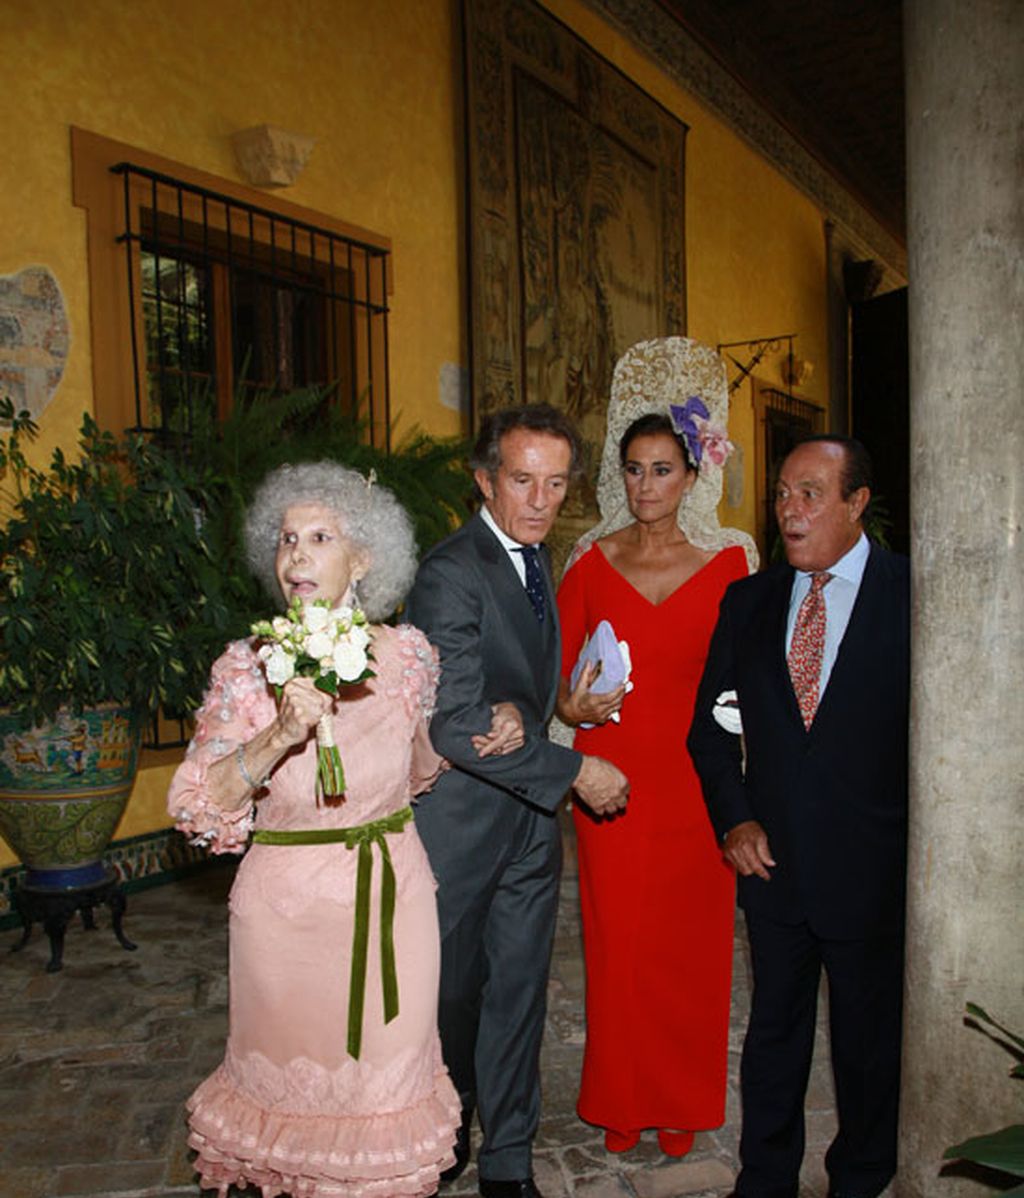 La boda del año: se casan la duquesa de Alba y Alfonso Díez